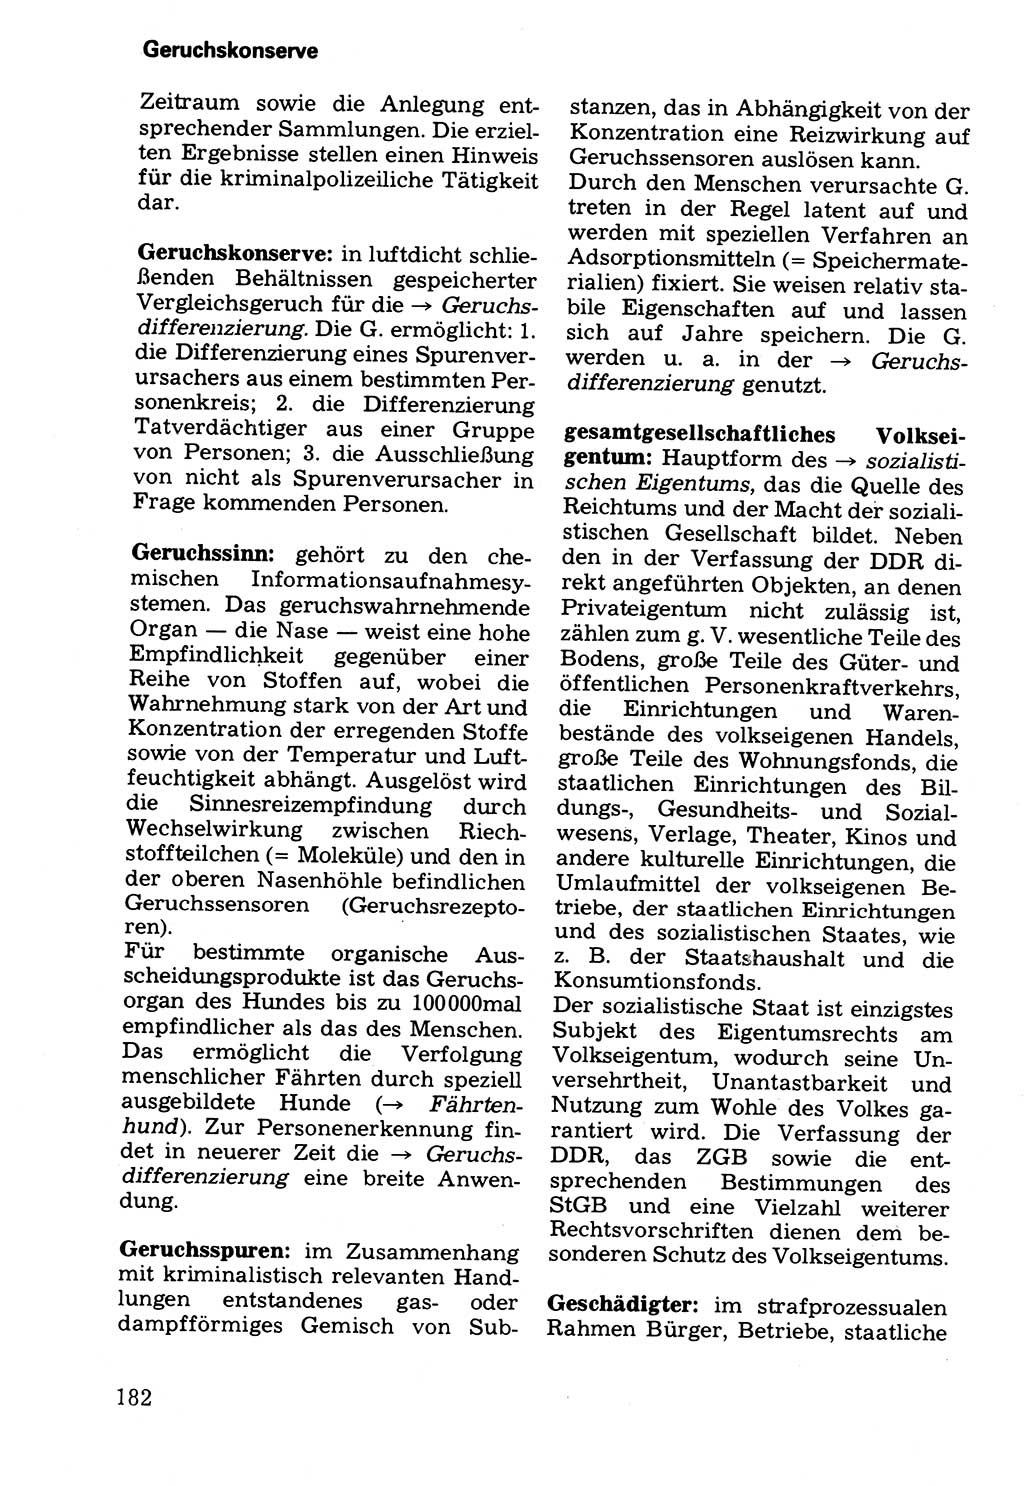 Wörterbuch der sozialistischen Kriminalistik [Deutsche Demokratische Republik (DDR)] 1981, Seite 182 (Wb. soz. Krim. DDR 1981, S. 182)